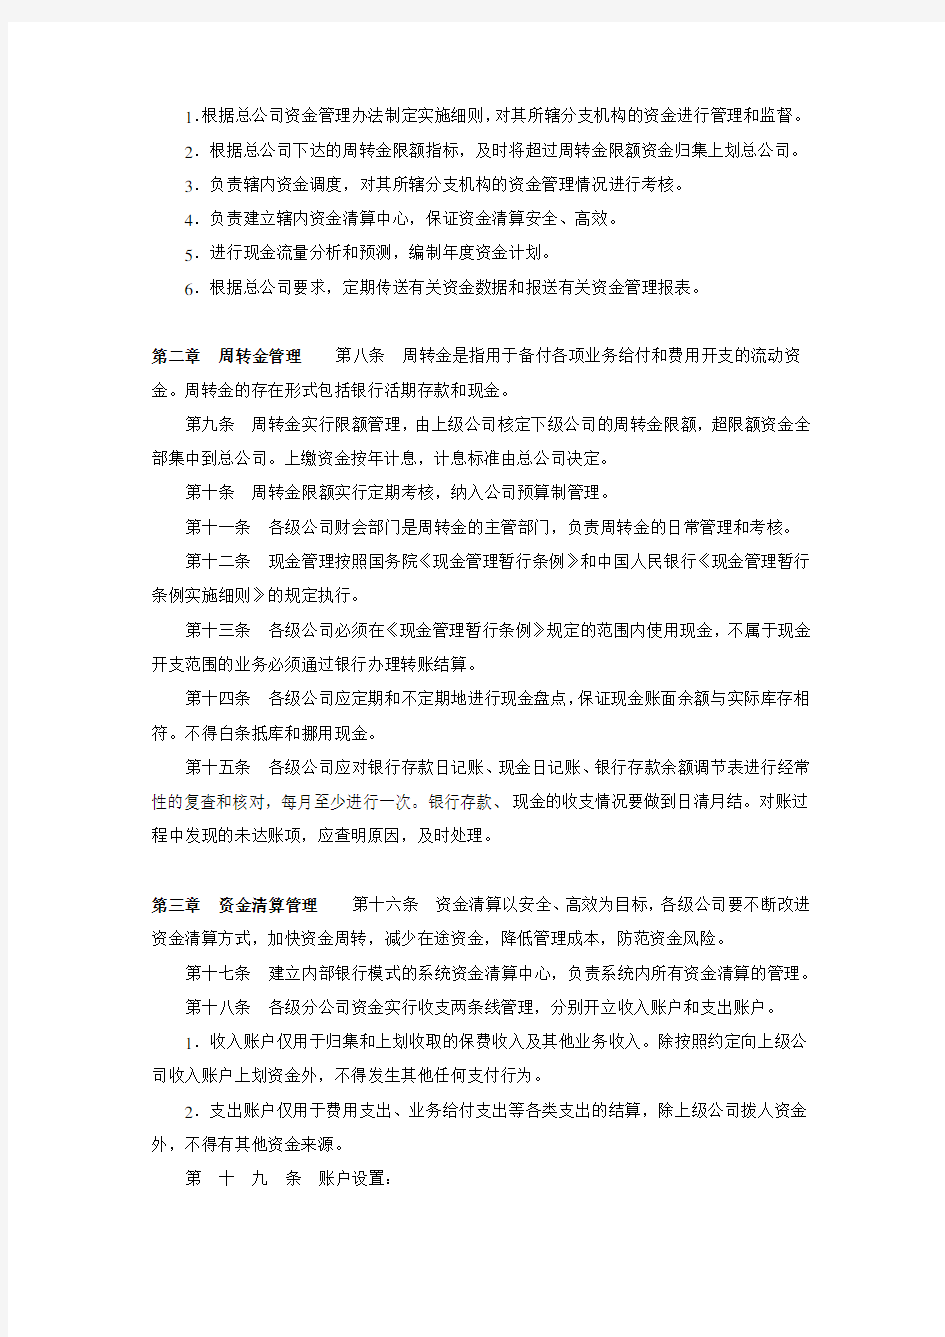 中国人寿保险公司关于印发资金管理方案